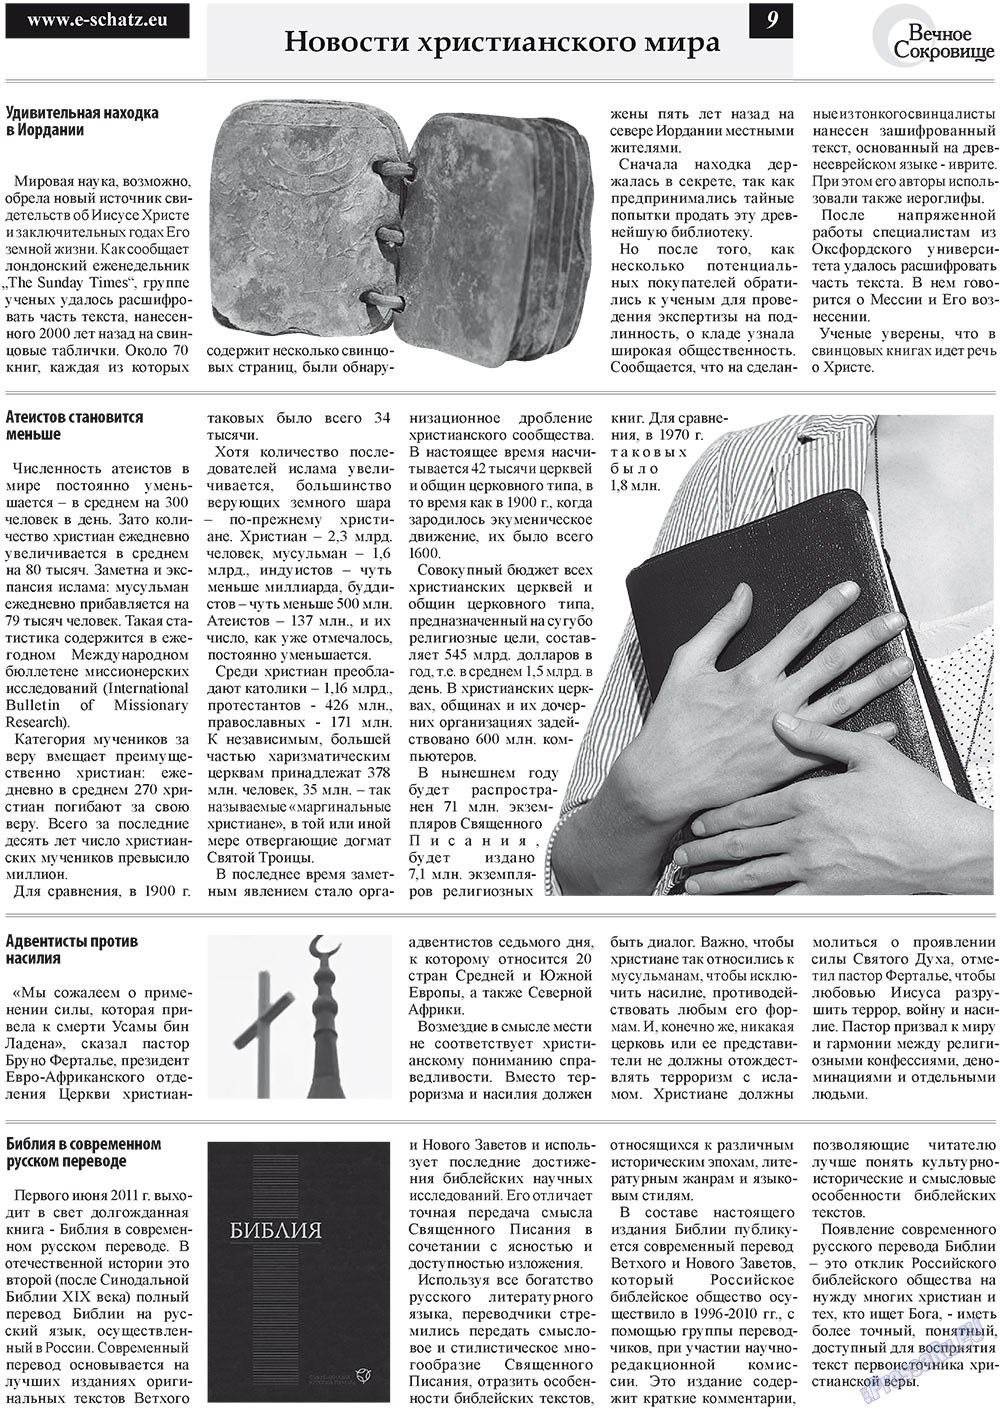 Вечное сокровище, газета. 2011 №3 стр.9